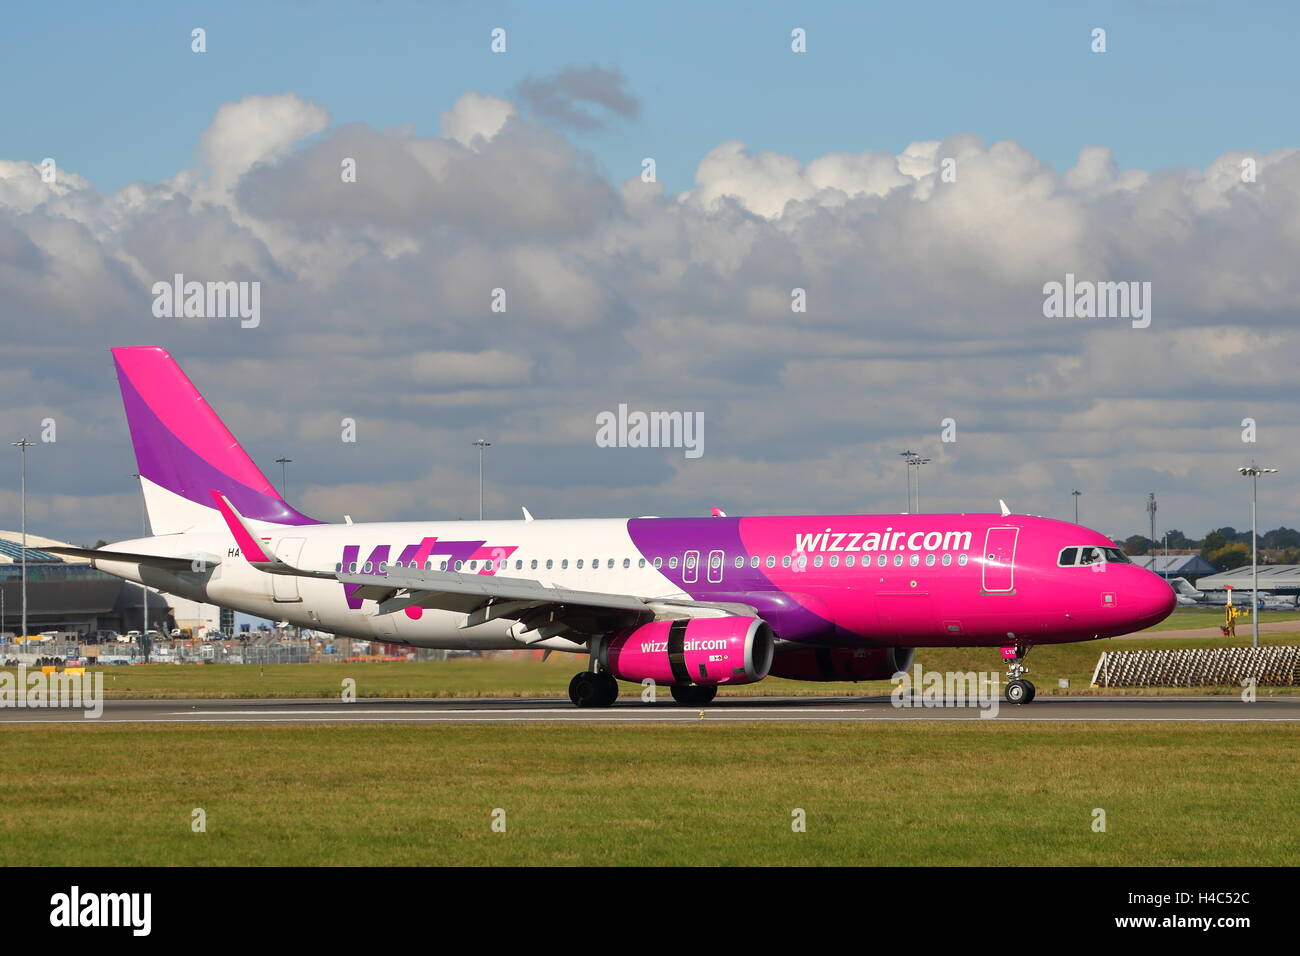 Wizz Air Airbus A320-200 HA-LYO landet auf dem Flughafen Luton, UK Stockfoto